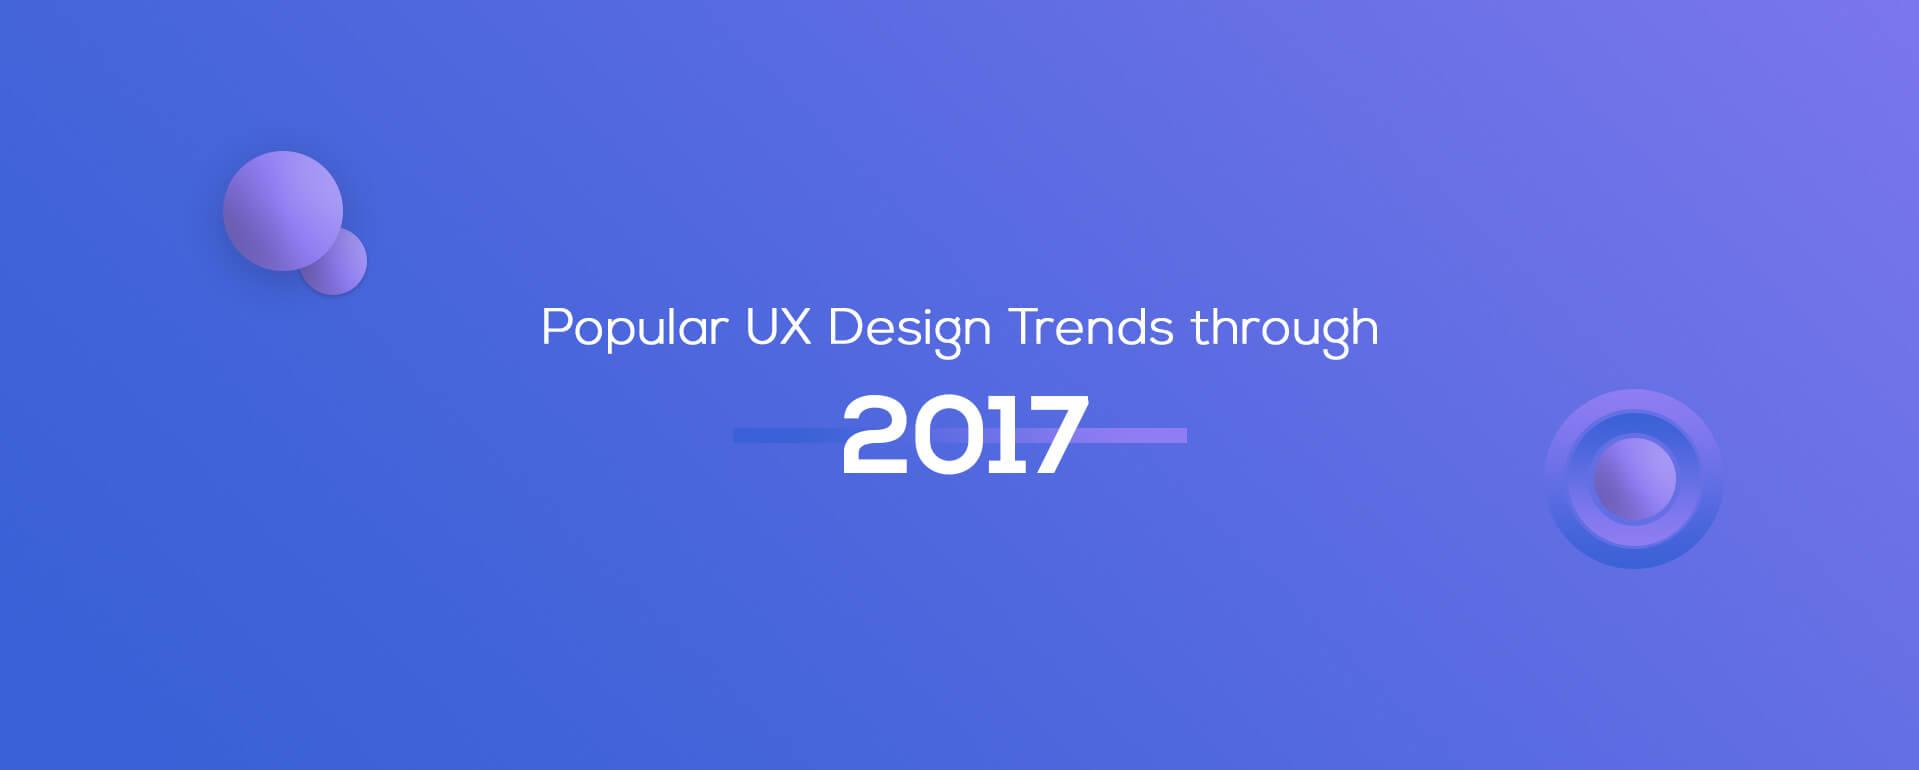 Popular UX Design Trends through 2017